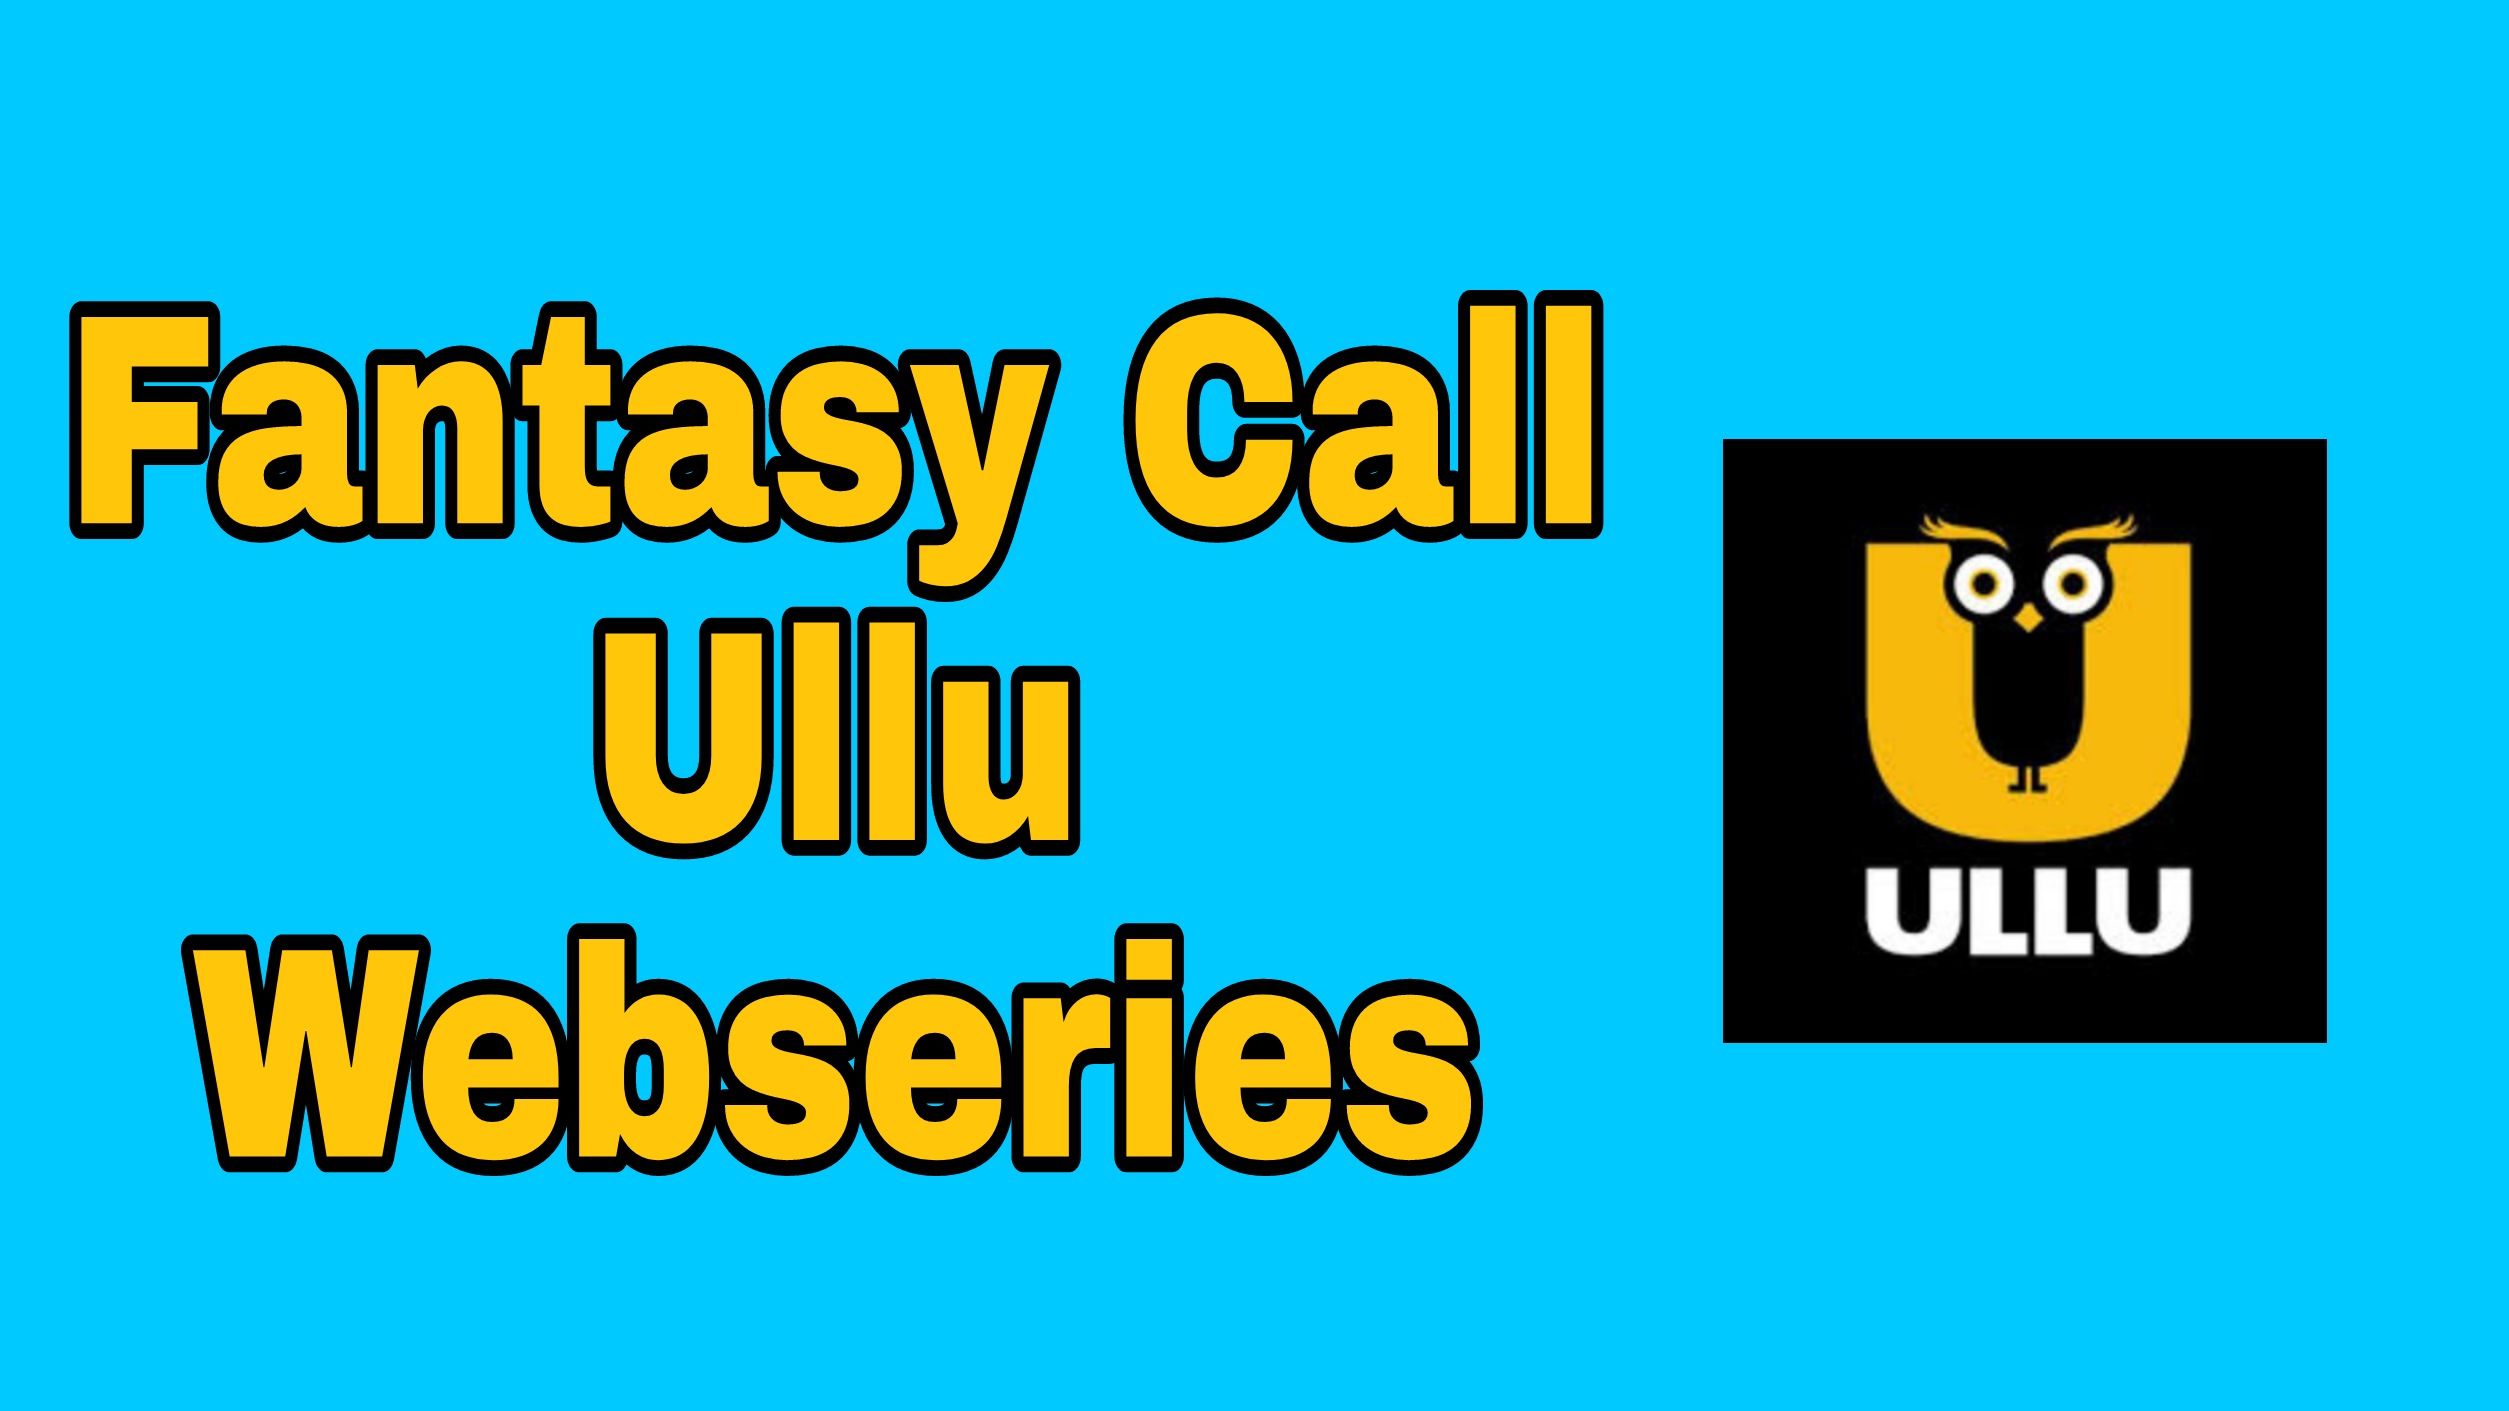 Fantasy Call Ullu